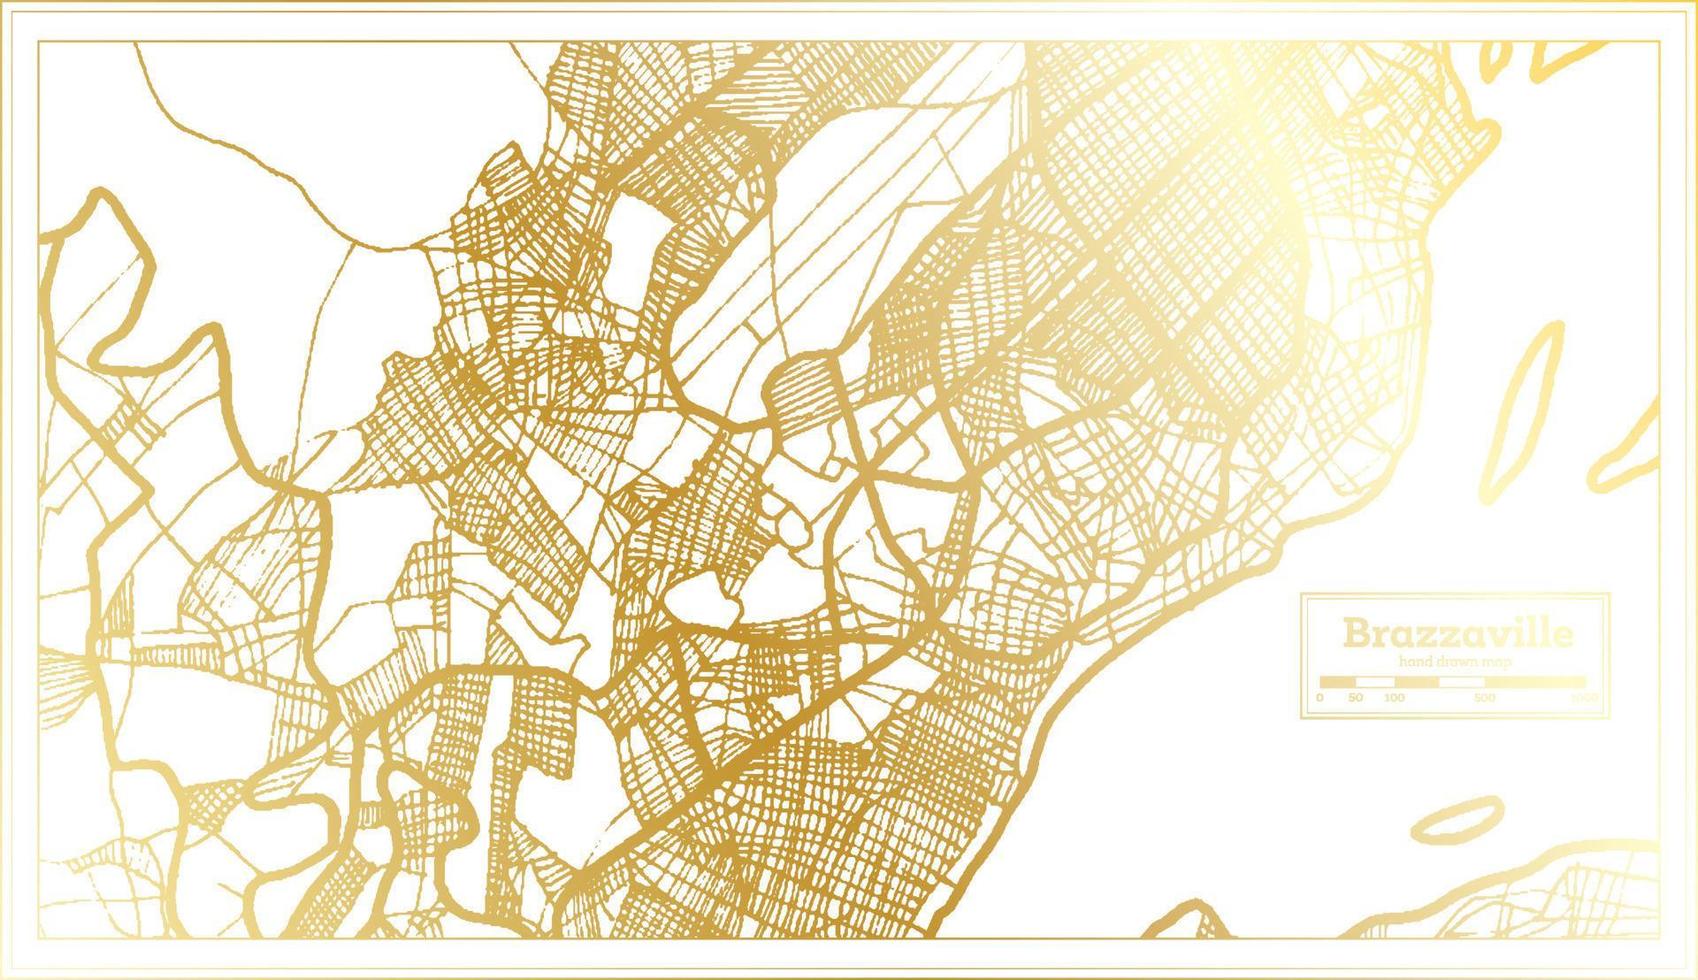 mapa de la ciudad de brazzaville congo en estilo retro en color dorado. esquema del mapa. vector